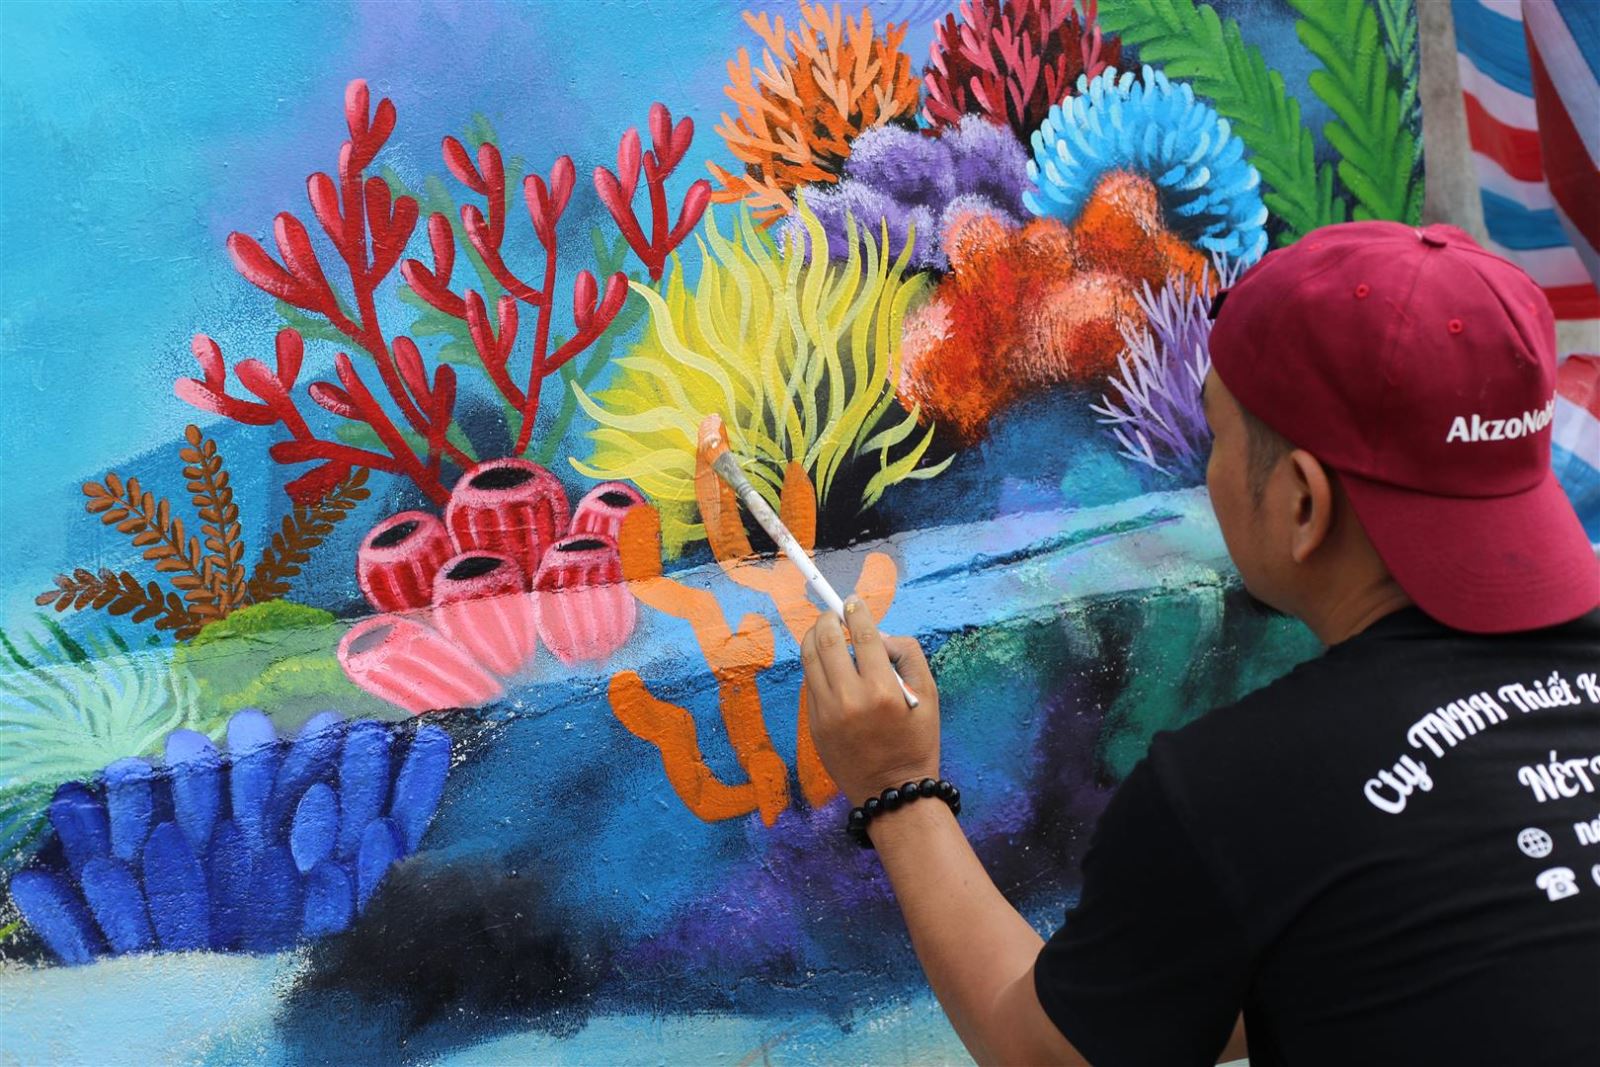 Hình vẽ san hô: Hãy cùng khám phá thế giới san hô vô cùng phong phú thông qua hình vẽ tuyệt đẹp này. Mỗi chi tiết sắc nét đều cho ta thấy được sự đẹp đến tuyệt vời của loài san hô tuyệt đẹp.